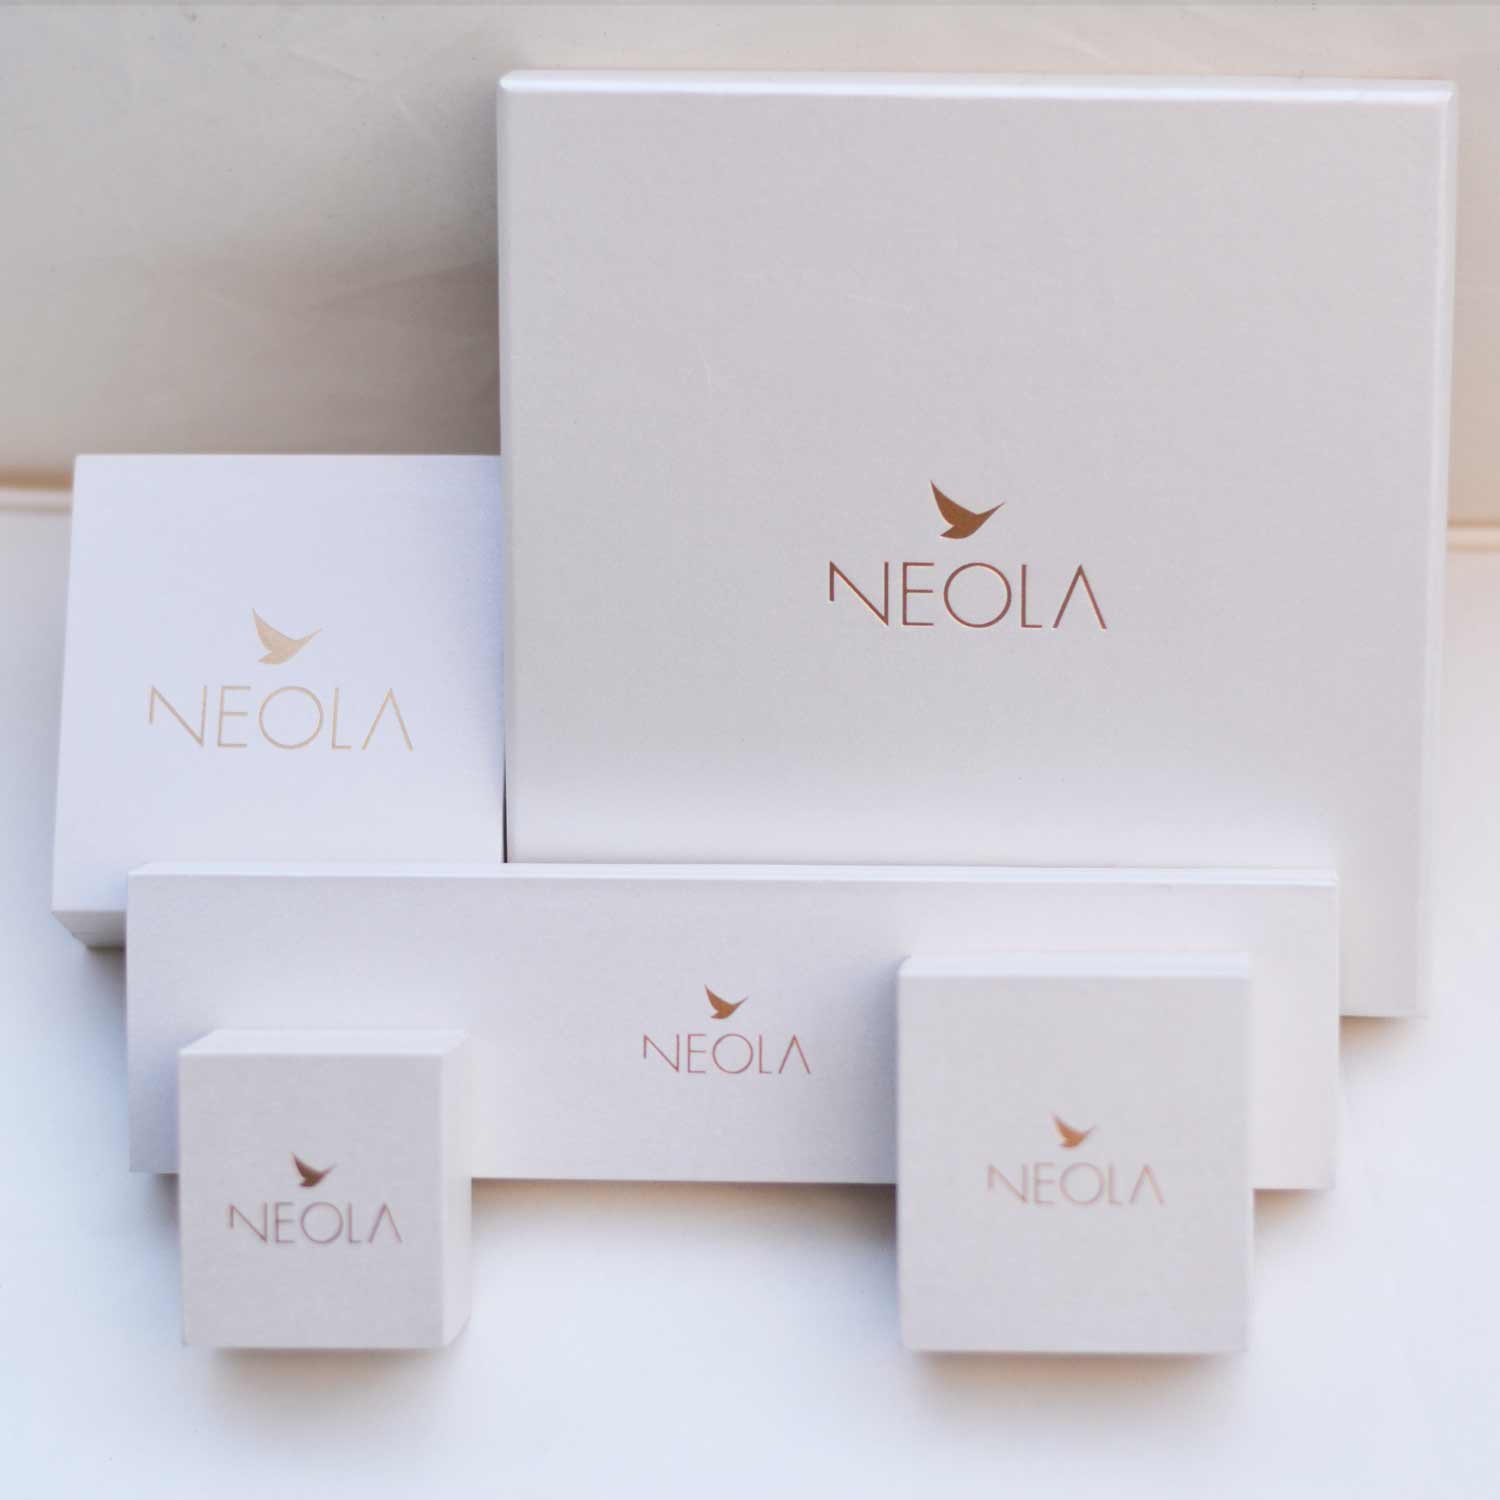 Neola design packaging